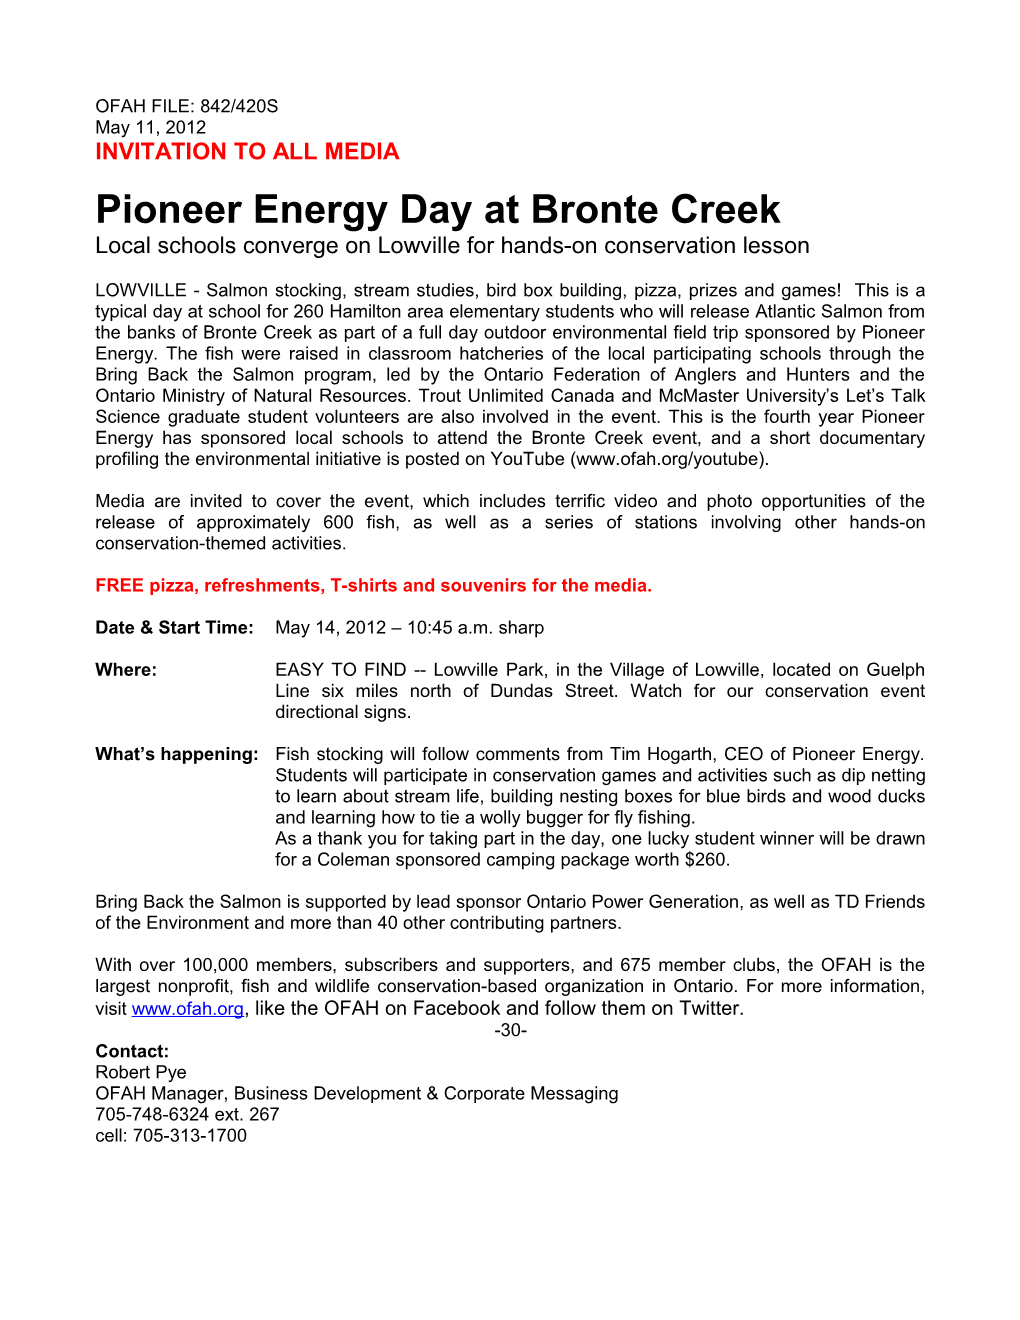 Pioneer Energy Day at Bronte Creek